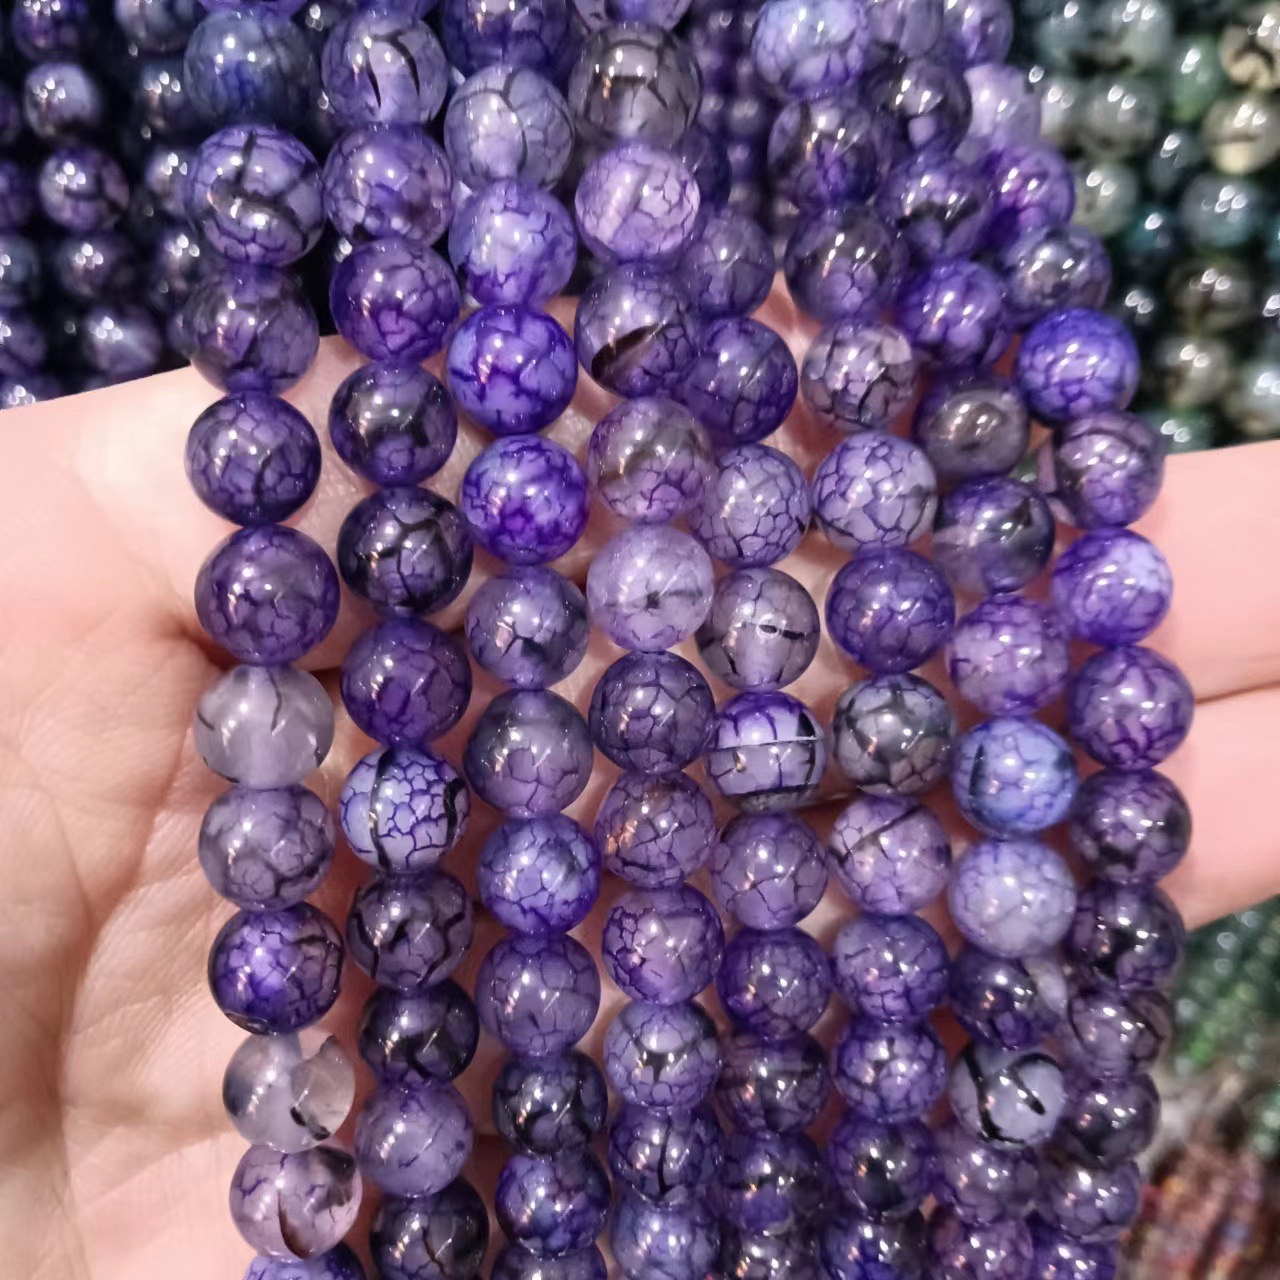 2:violetti